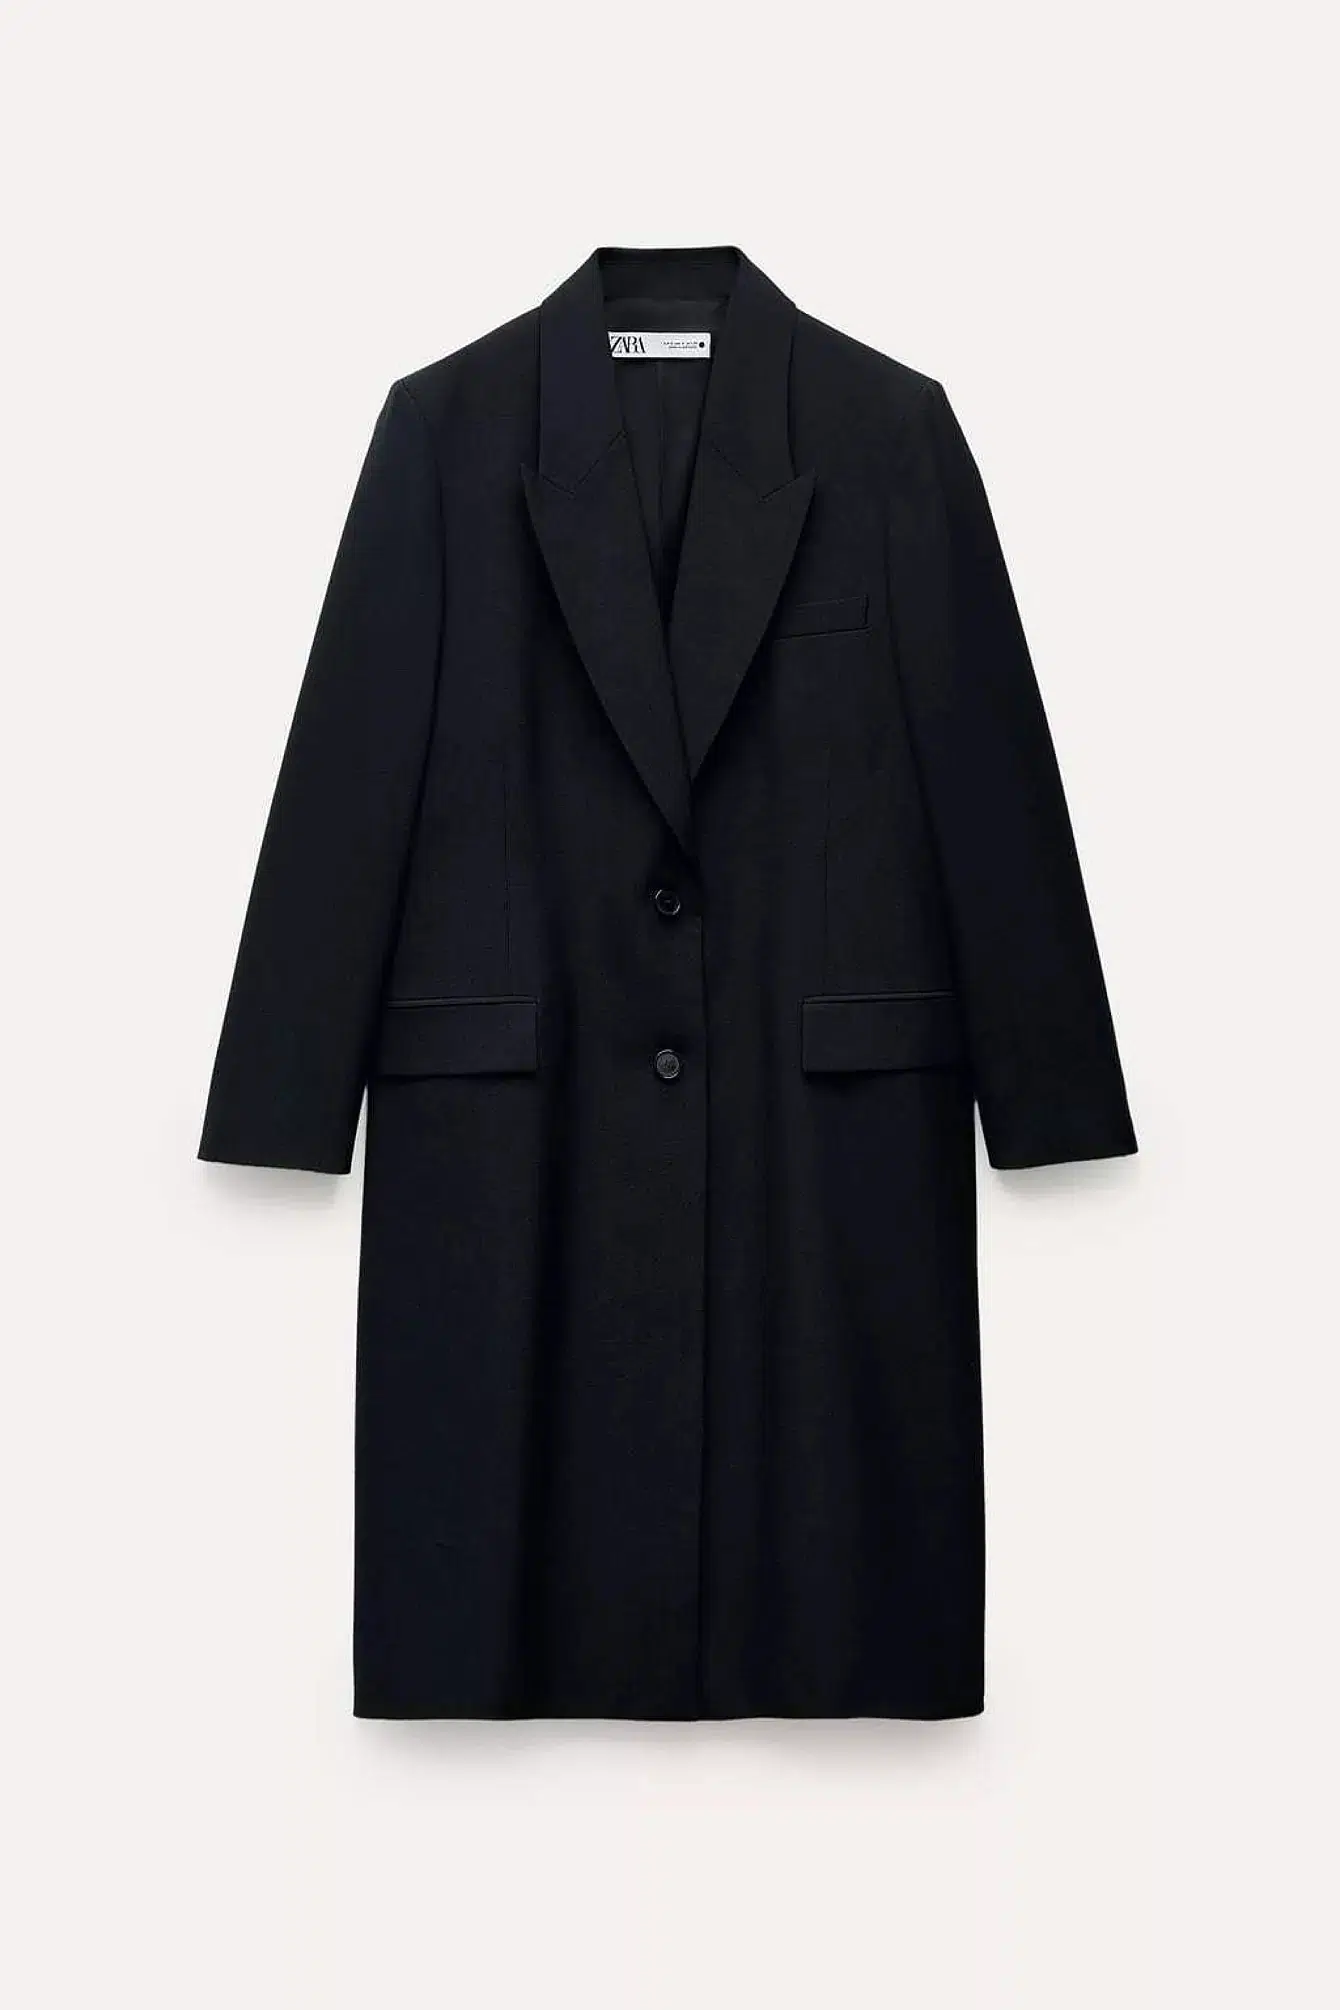 Черное пальто в мужском стиле от Zara